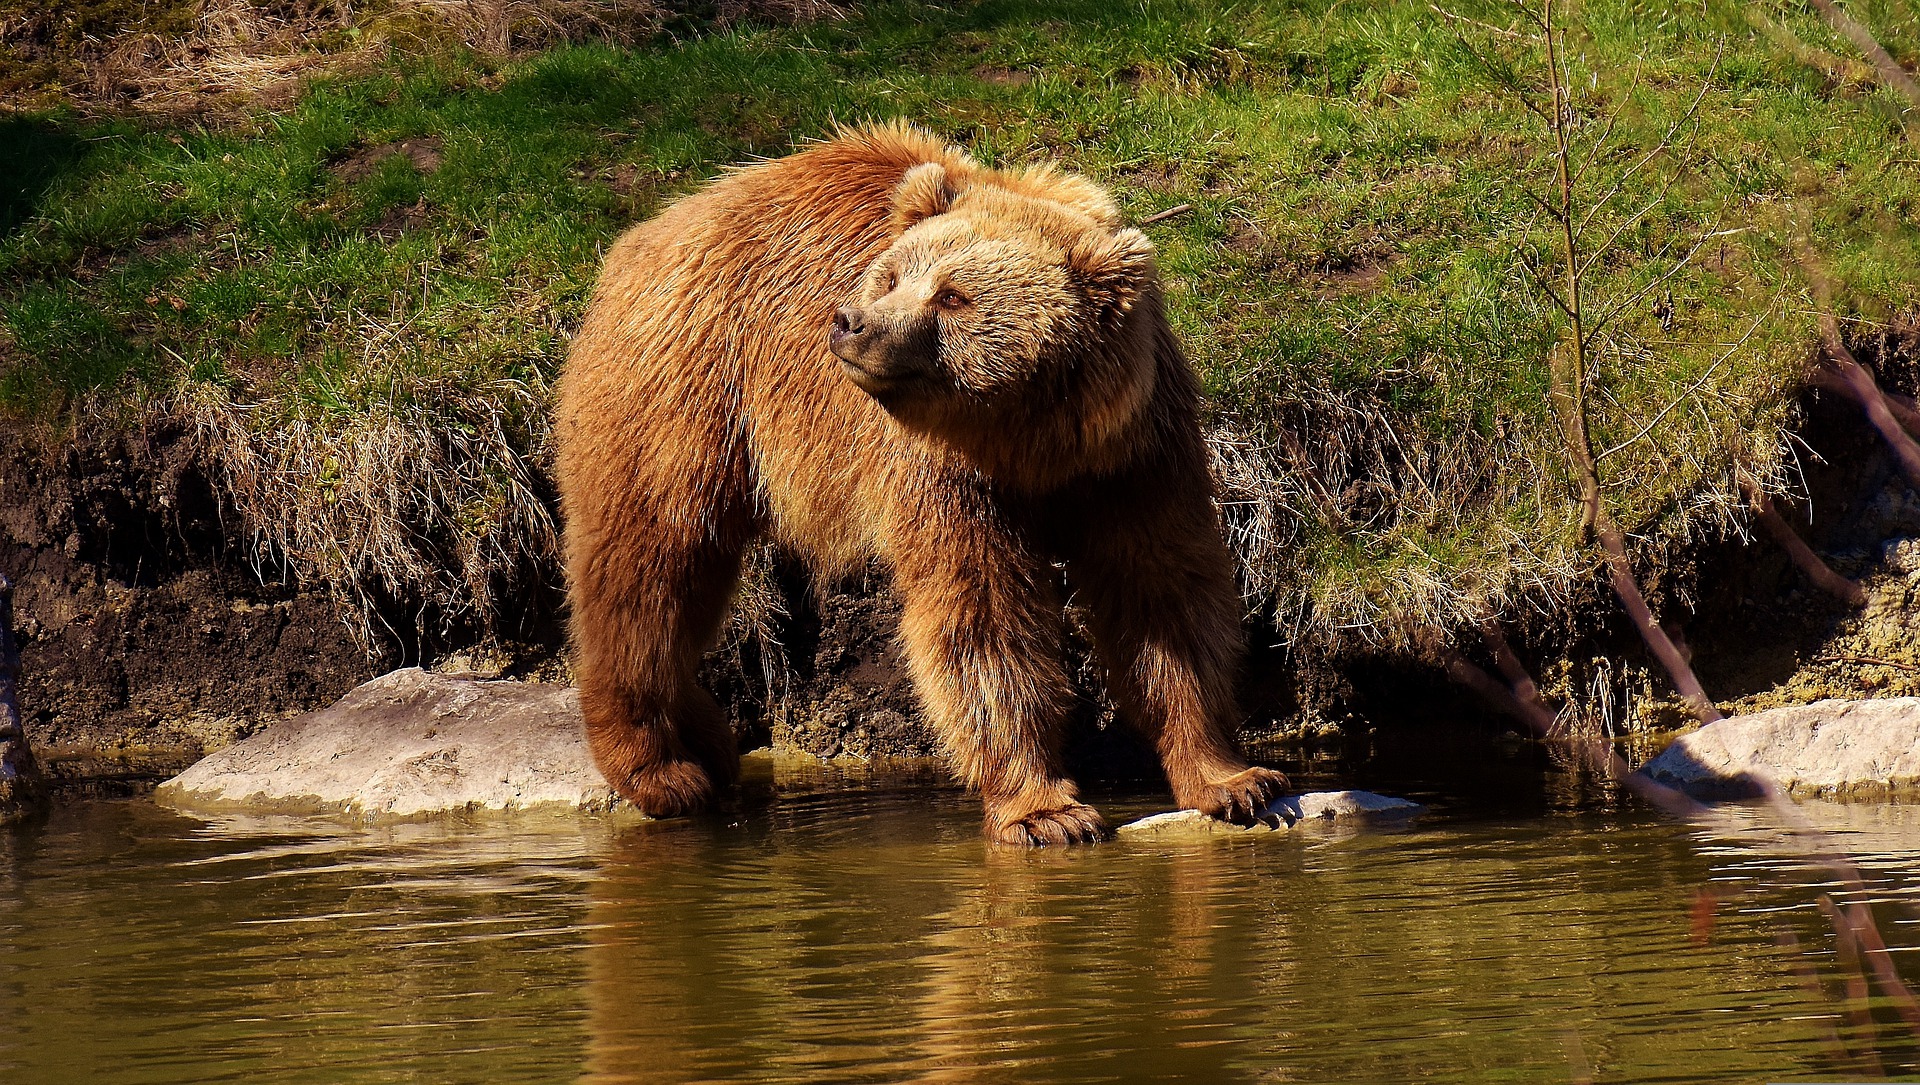 Niedźwiedzie w Tatrach rozpoczęły przygotowania do zimy i pojawiają się obok ludzkich osiedli